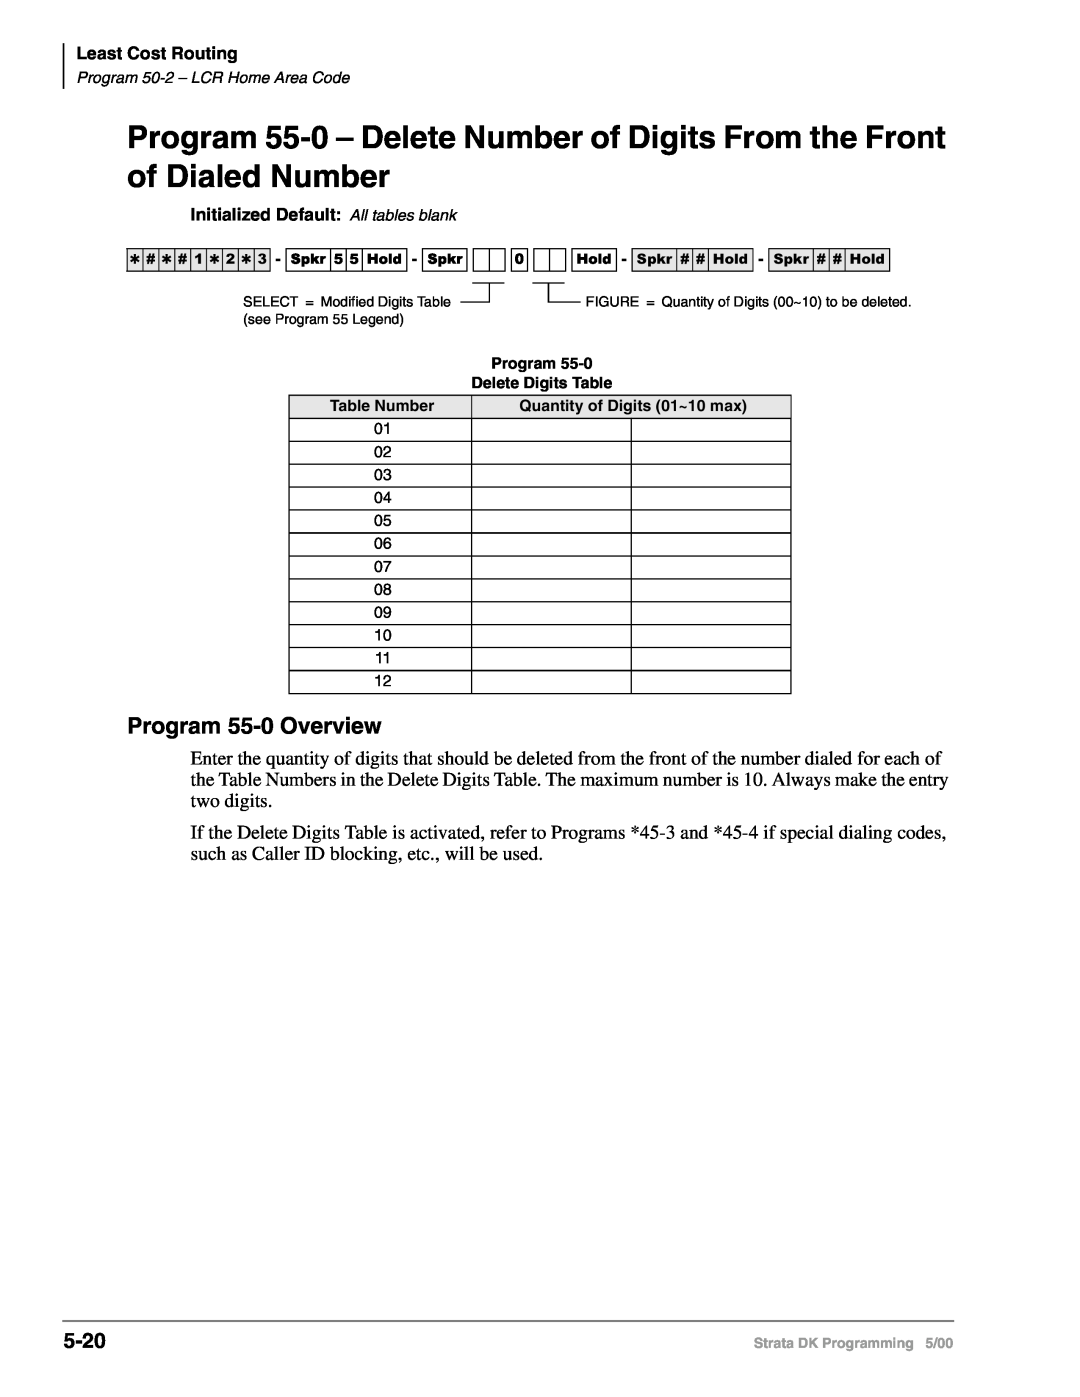 Toshiba DK40I, dk14, DK424I manual of Dialed Number, Program 55-0Overview, 5-20 